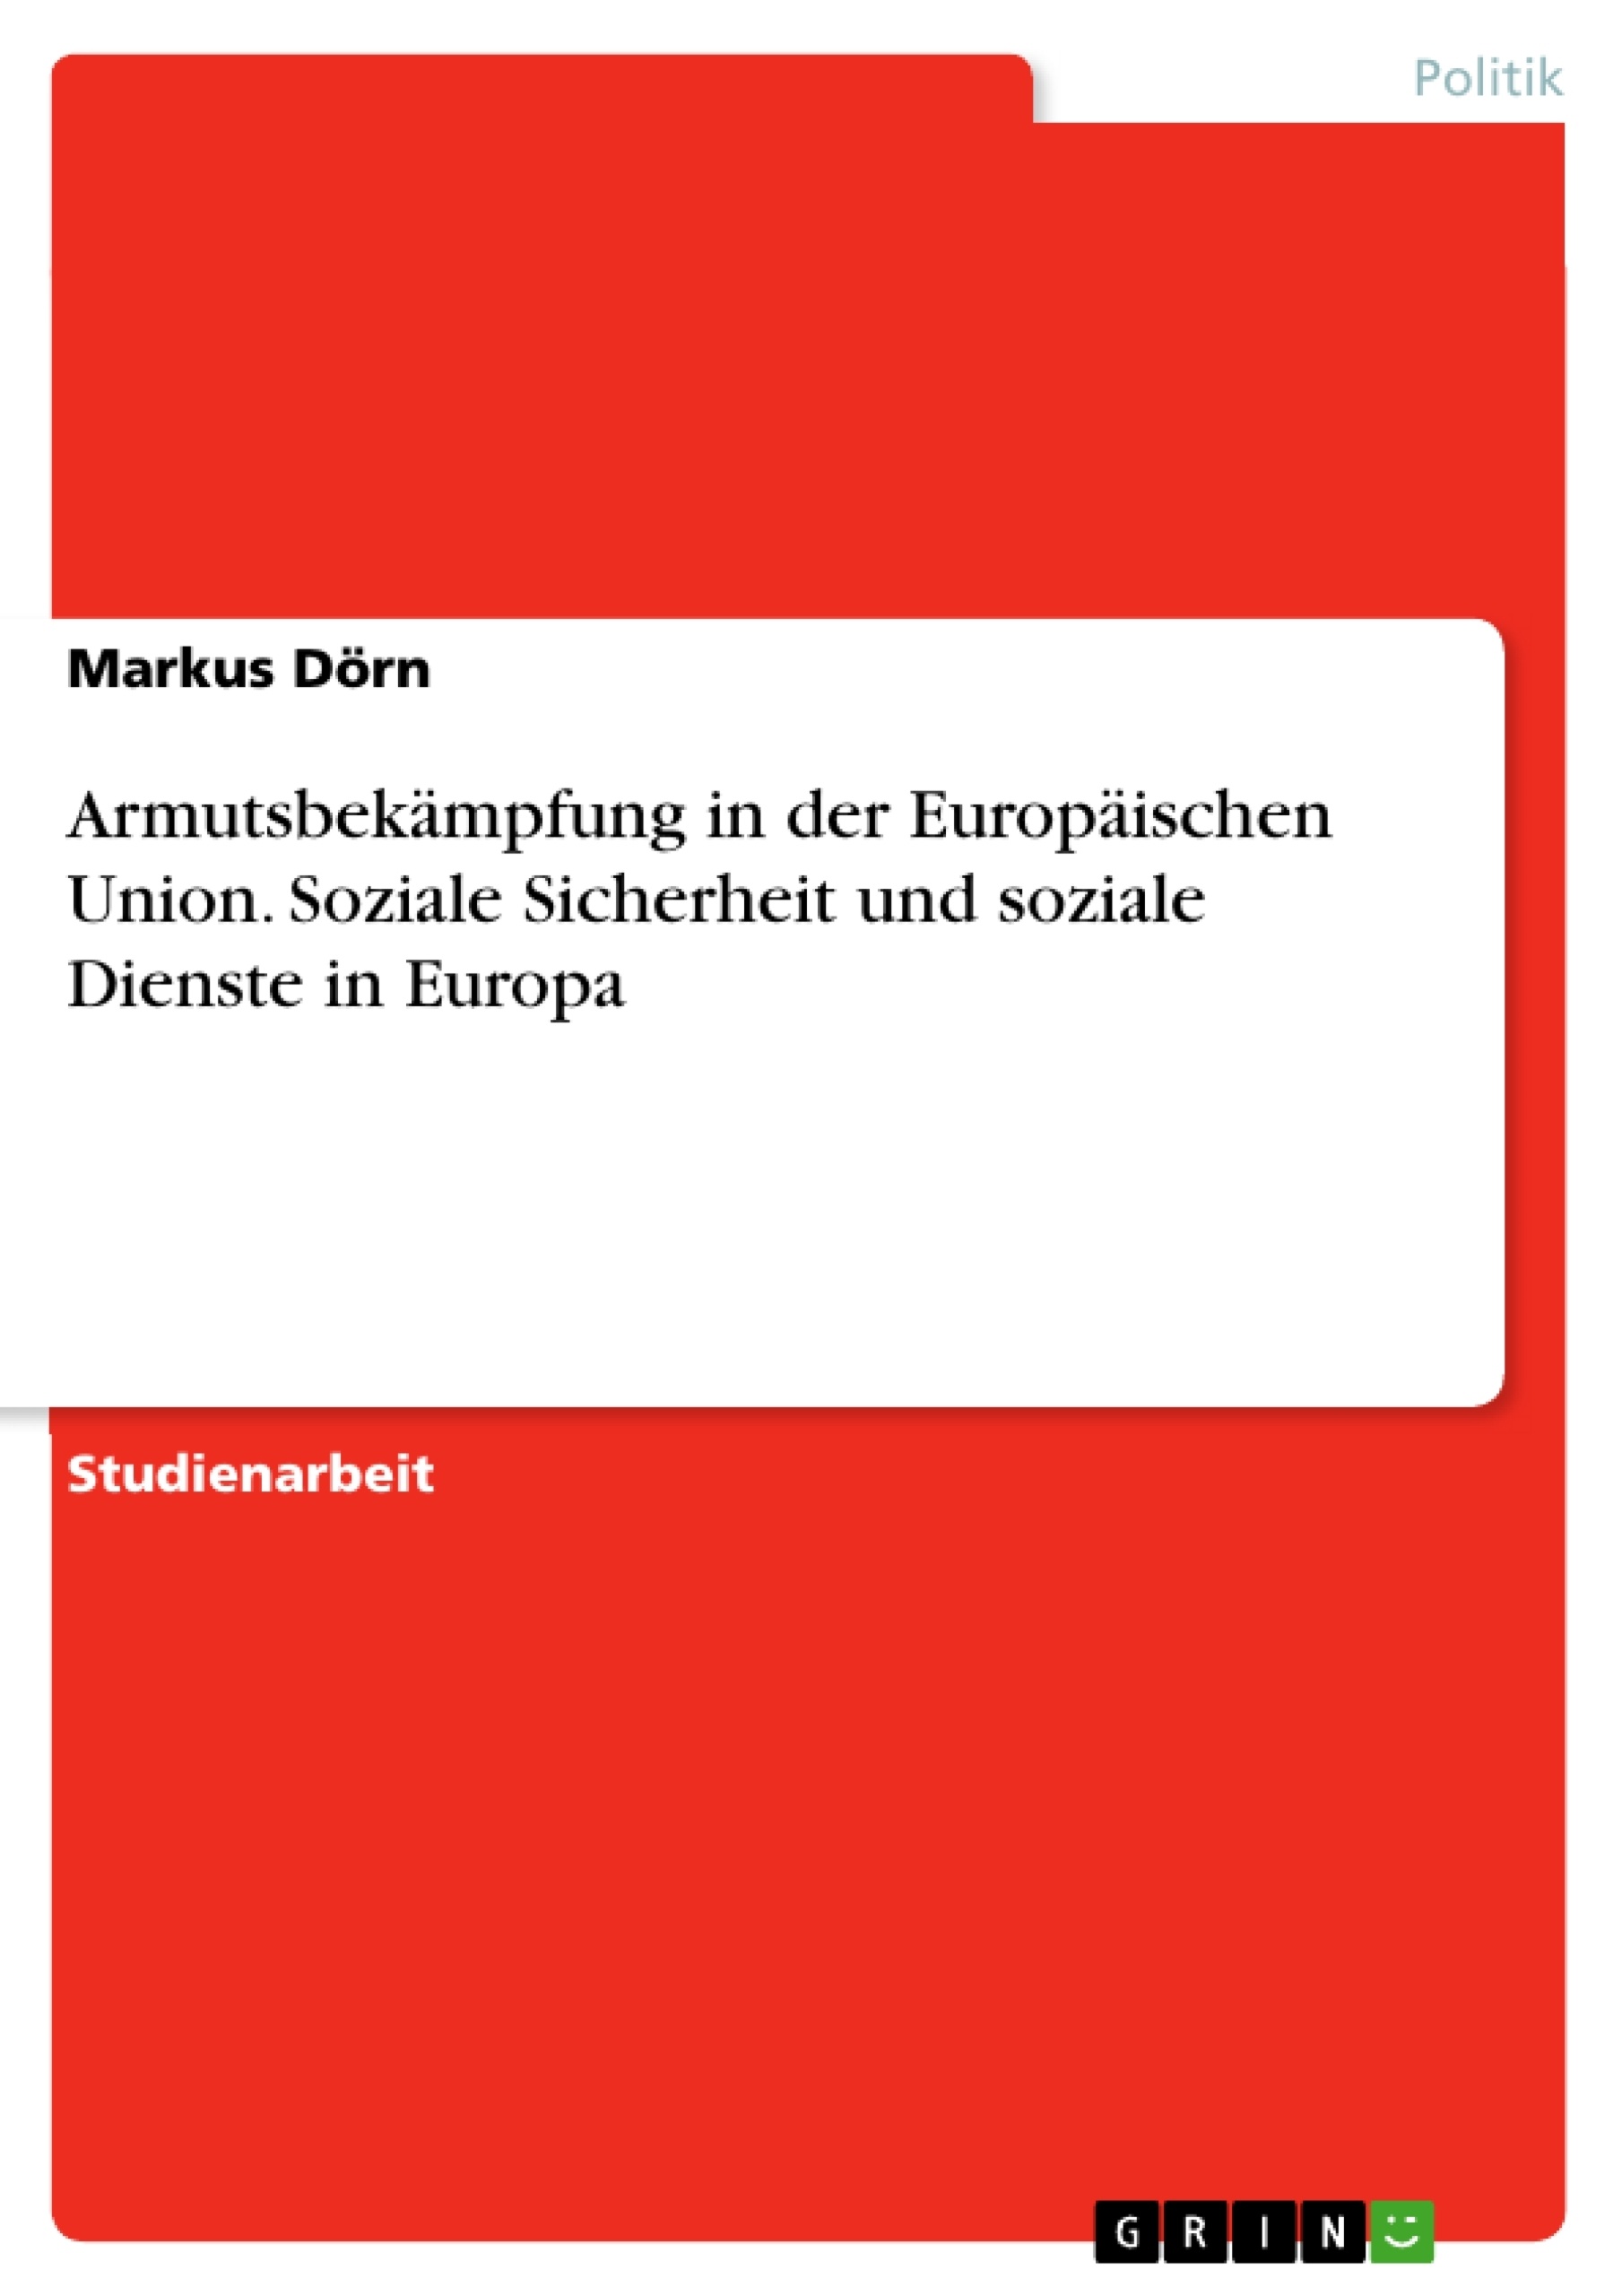 Titel: Armutsbekämpfung in der Europäischen Union. Soziale Sicherheit und soziale Dienste in Europa